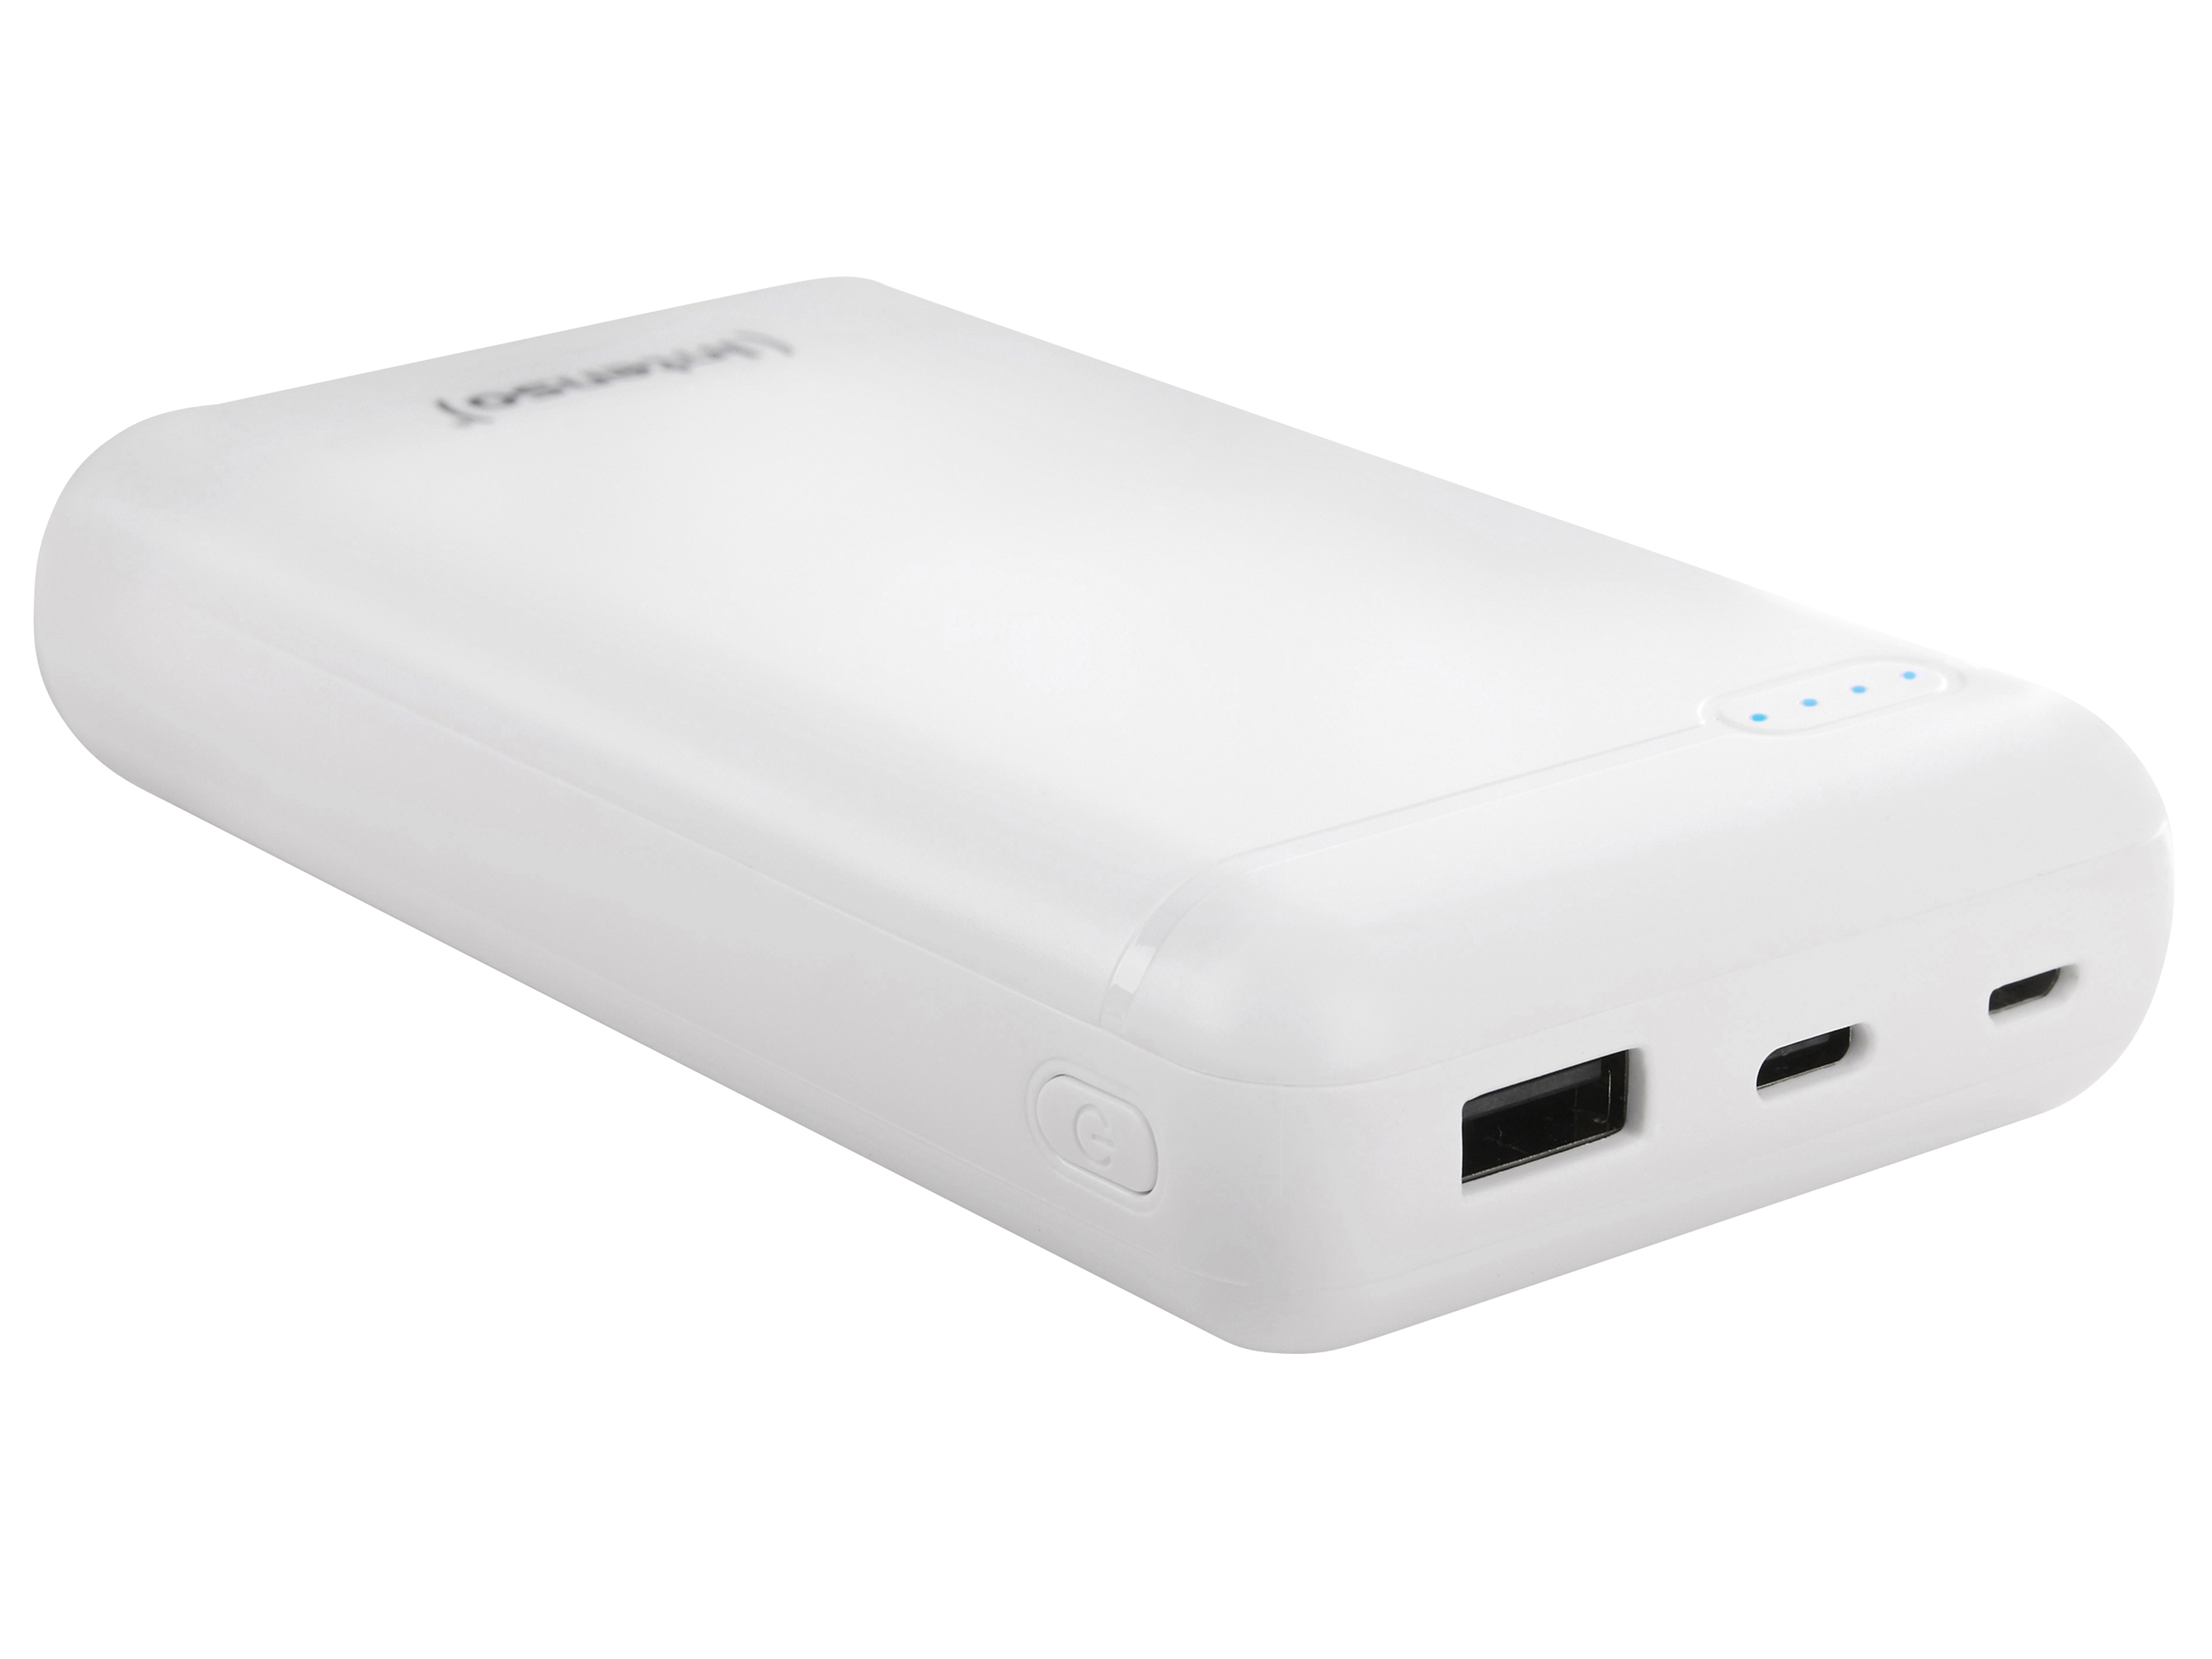 INTENSO USB Powerbank 7313552 XS 20000, 20.000 mAh, weiß